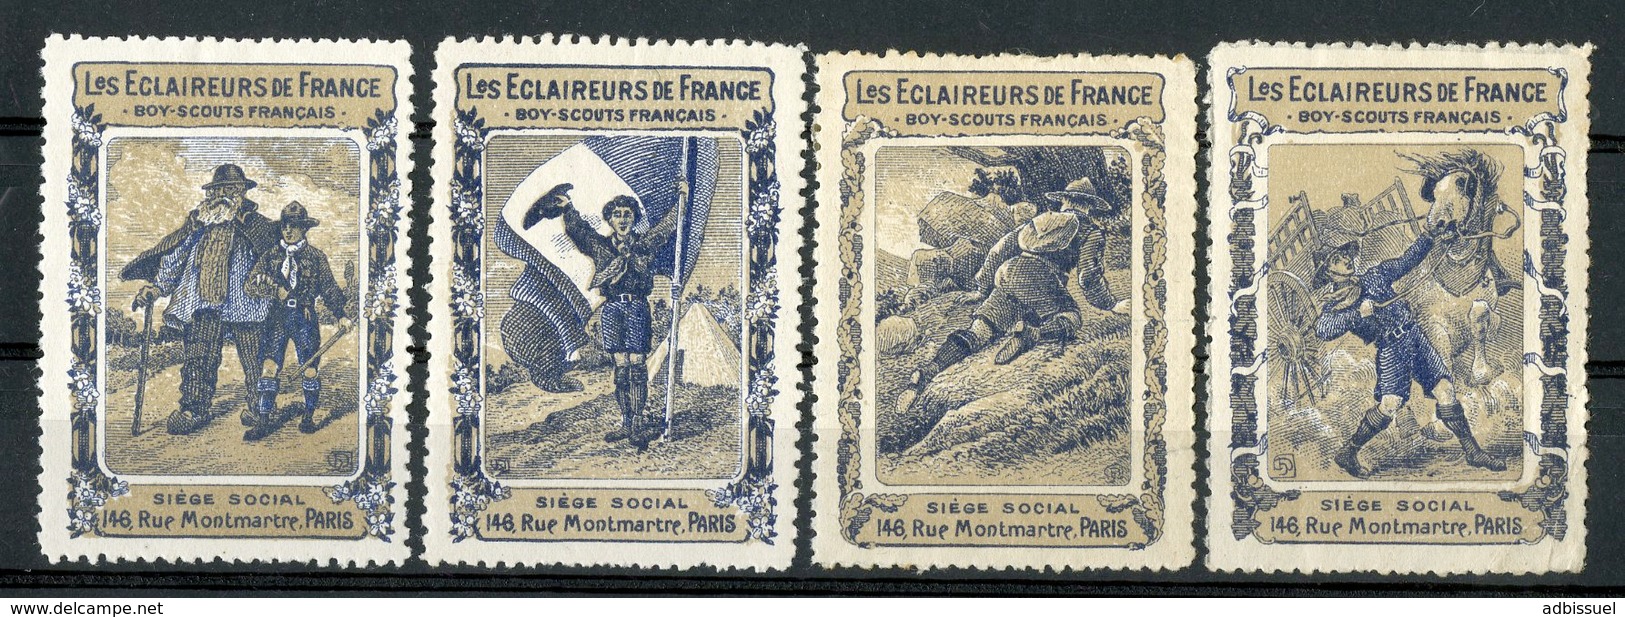 SCOUT "Les Eclaireurs De France / Boy-Scouts Français" 4 Vignettes Vers 1918 Avec 4 Scènes Différentes - Unused Stamps